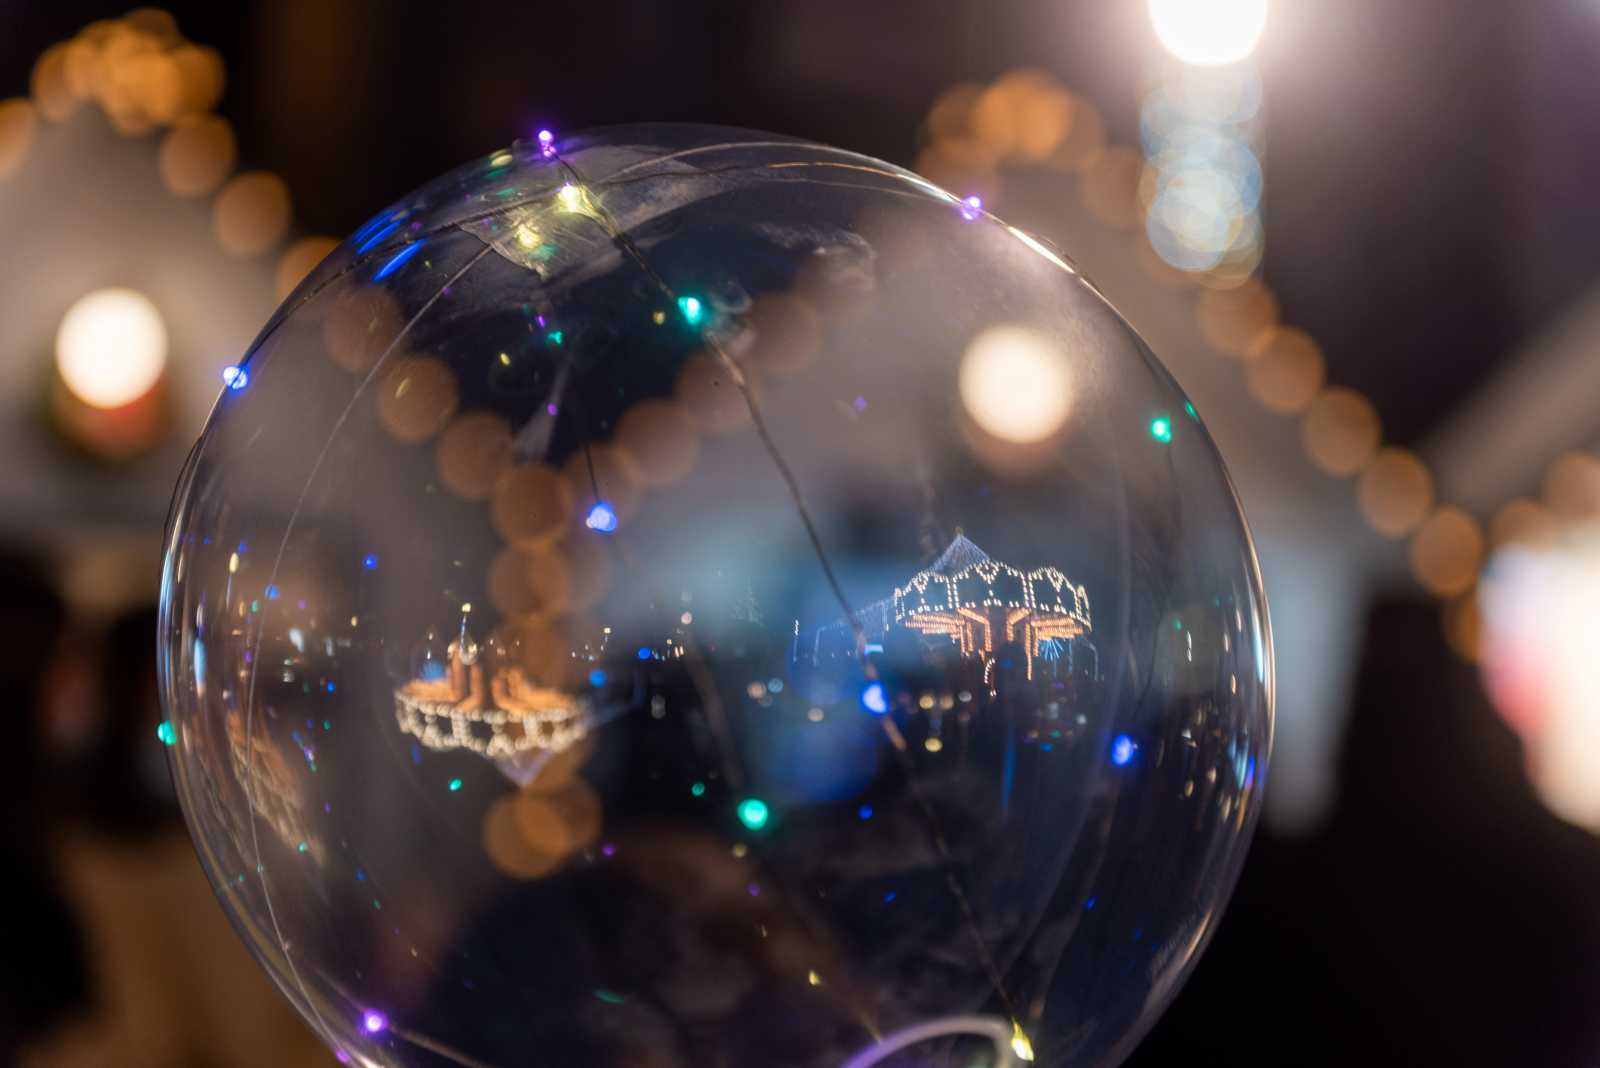 A karácsonyi fényeket nem csak a gömb töri meg, tükrözik a gyerekek kezében táncot járó luftballonok is, amelyekkel az egész tér tele van esténként. Színesen pislákoló fényeivel a város minden részén találkozhatunk. A csöppségek szorosan magukhoz ölelik a hazafele vezető úton.